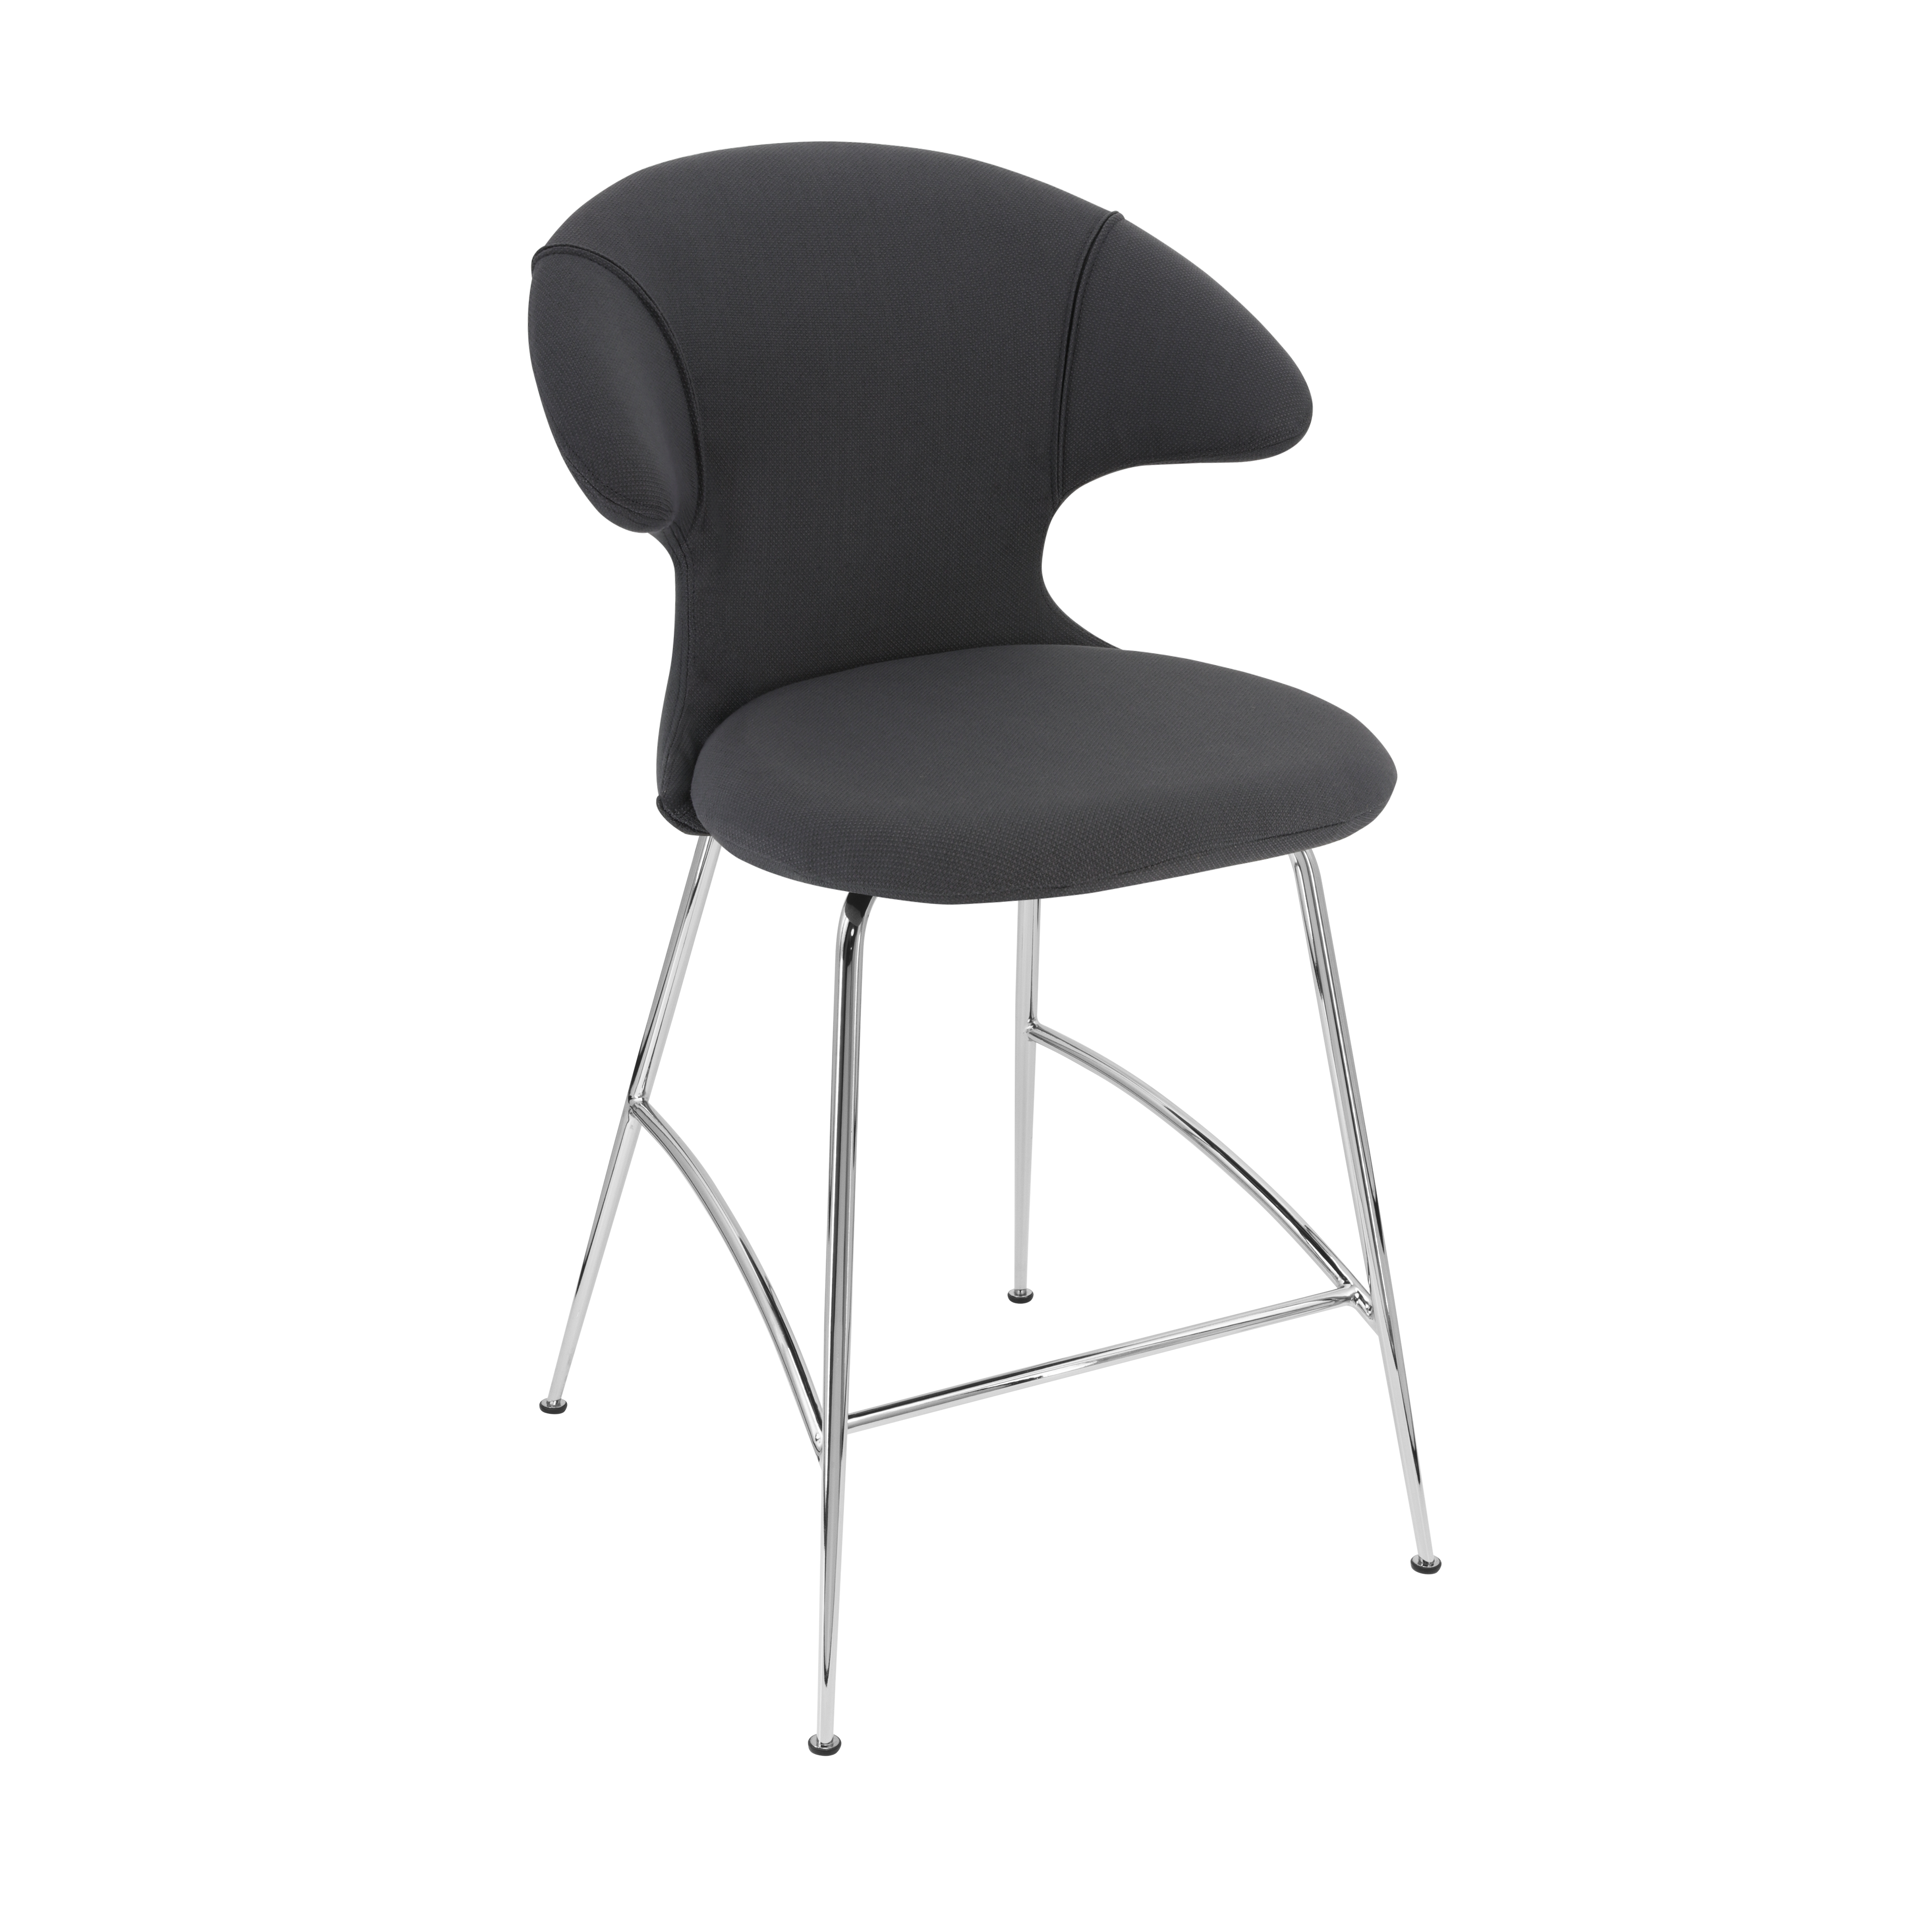 Time Flies Counter Stuhl in Shadow präsentiert im Onlineshop von KAQTU Design AG. Barstuhl mit Armlehne ist von Umage